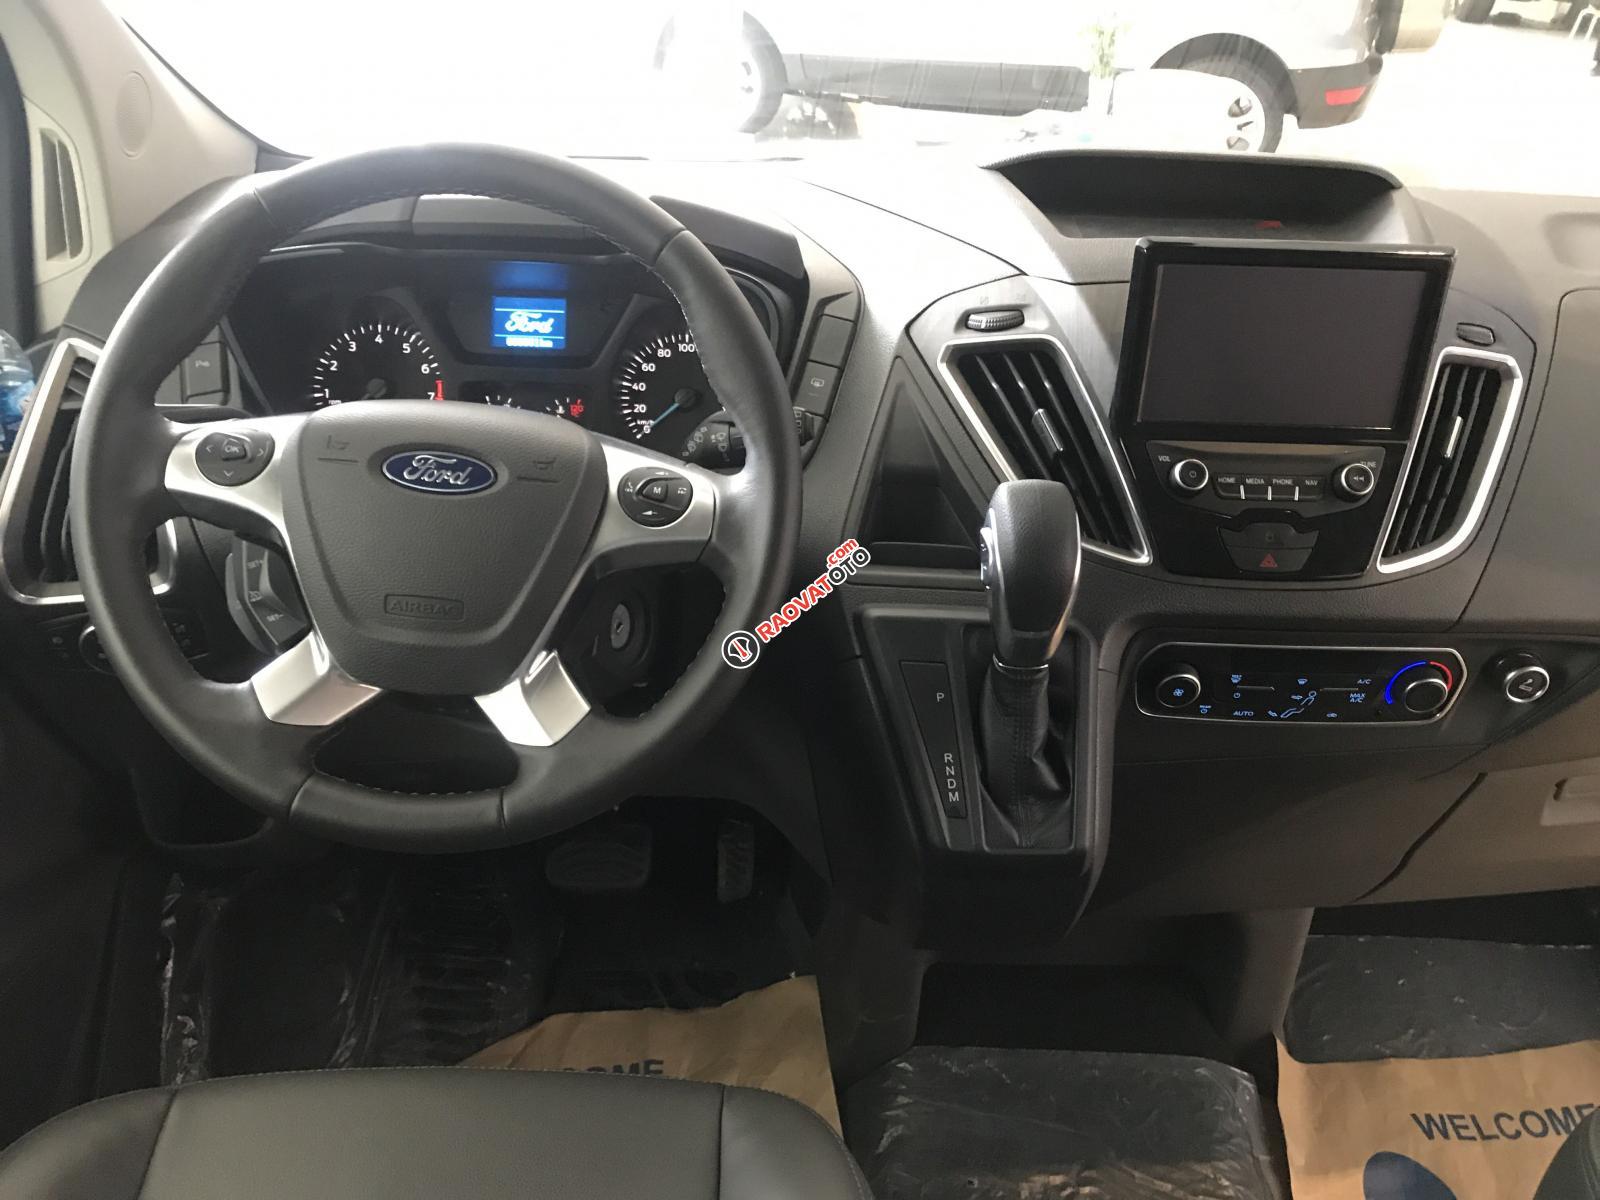 Ford Tourneo 2019 MPV thế hệ mới dòng xe gia đình đỉnh cao, đẹp xuất sắc-4